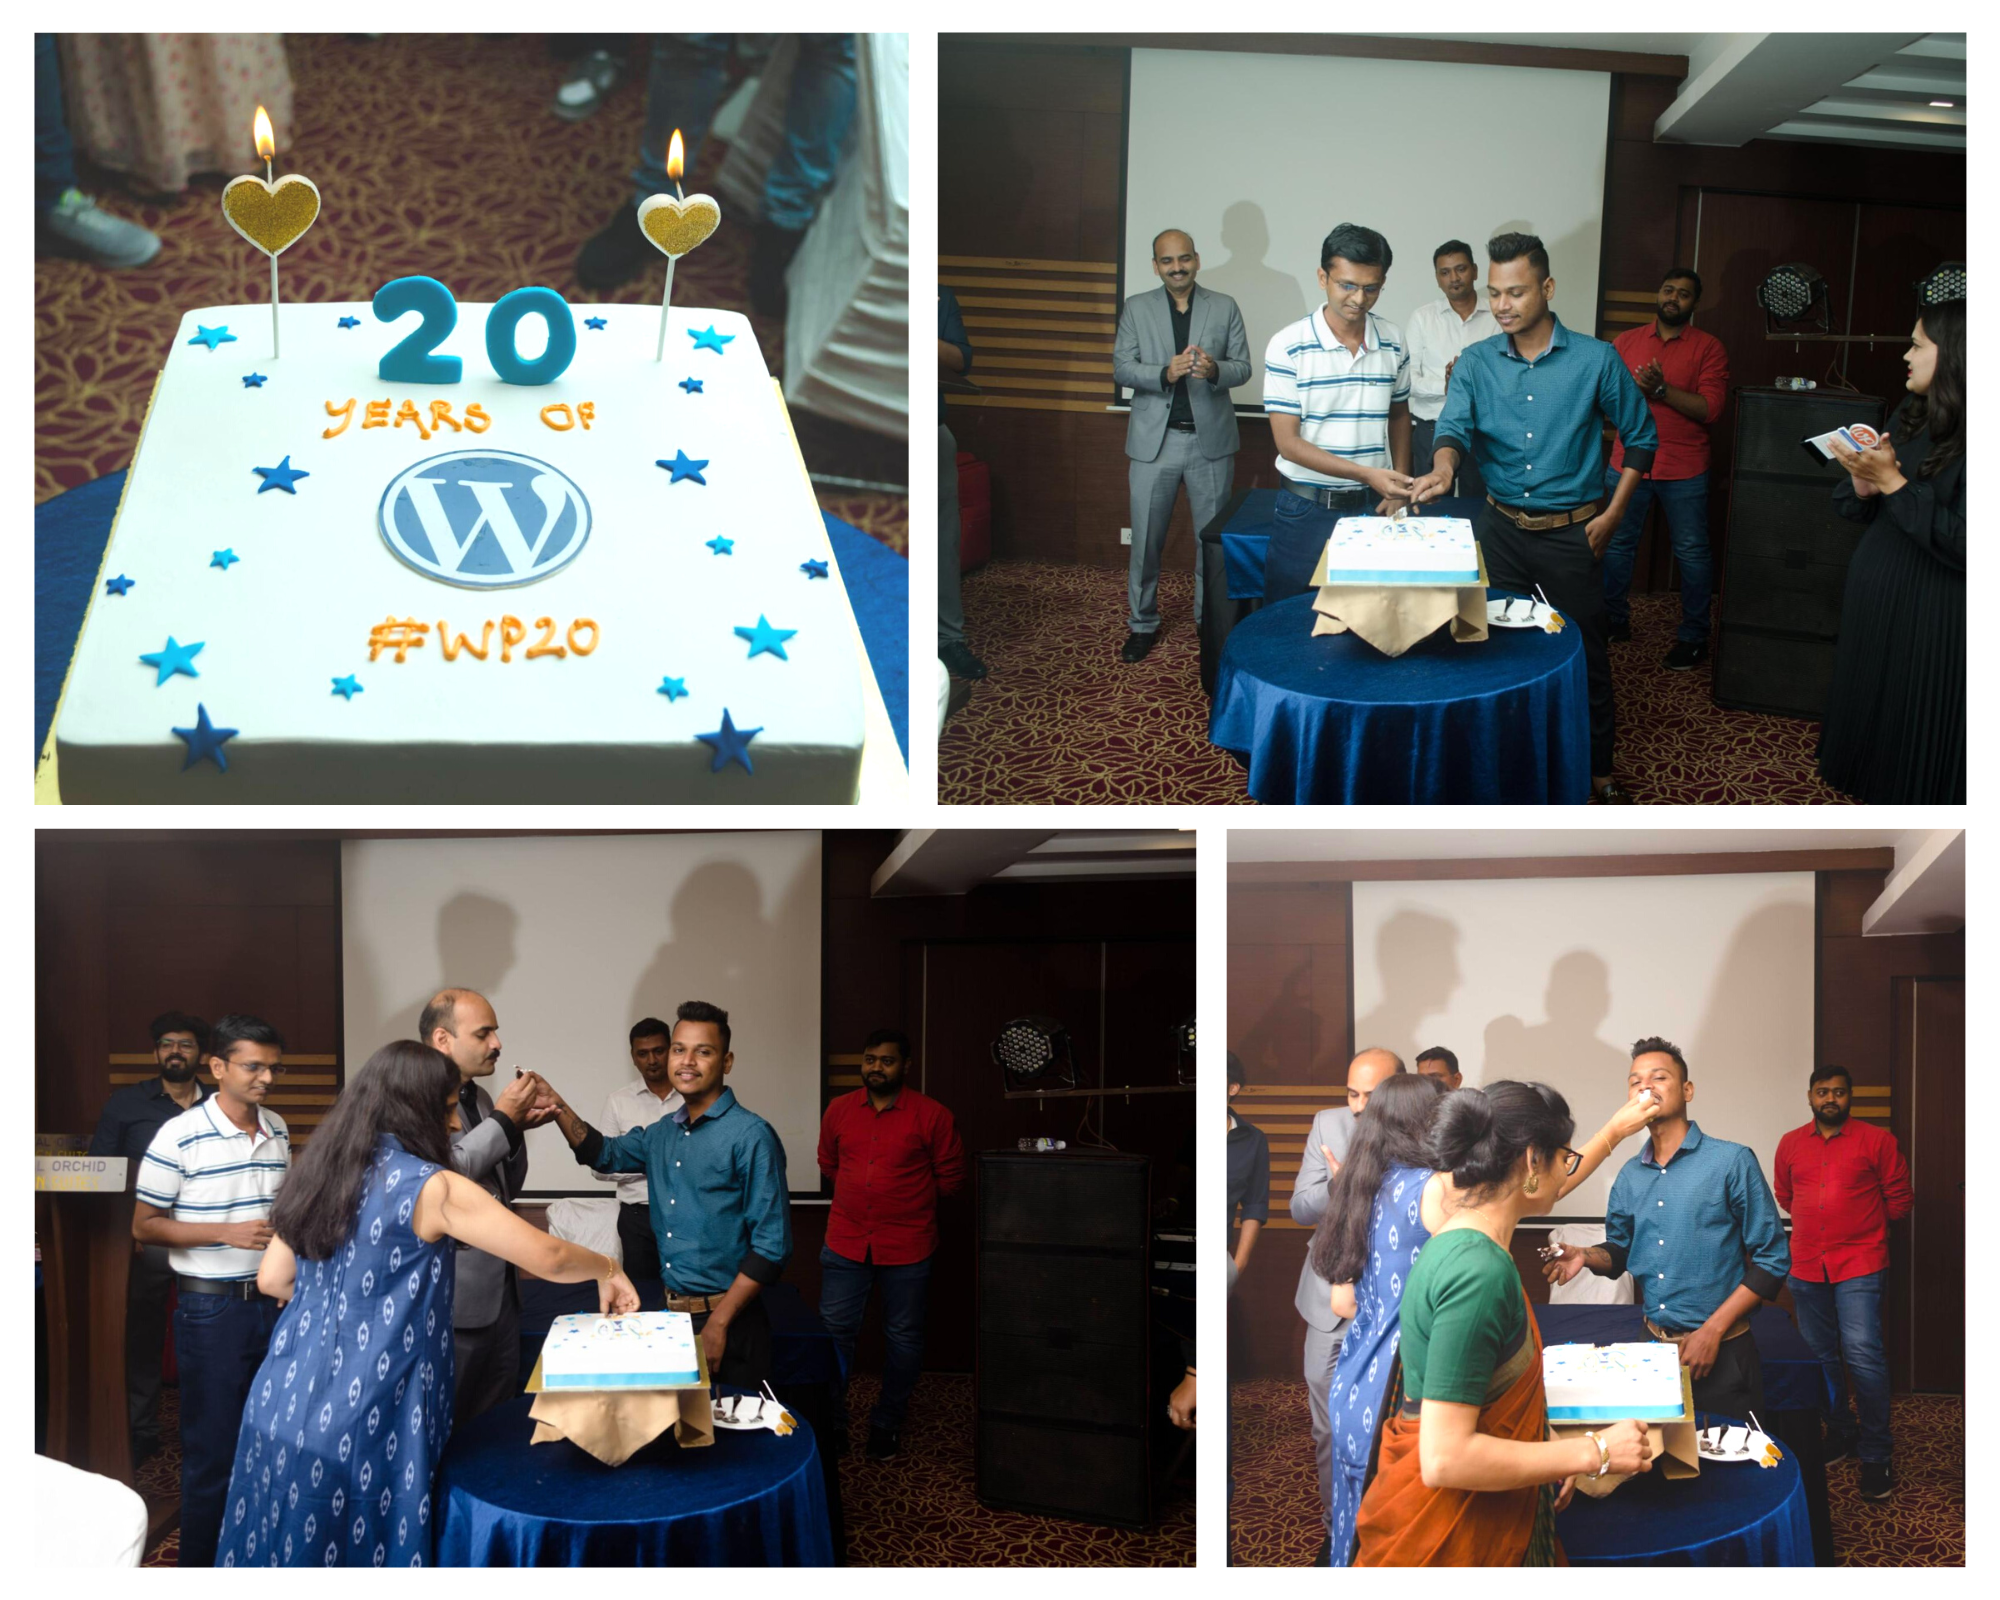 WP20 birthday celebrations